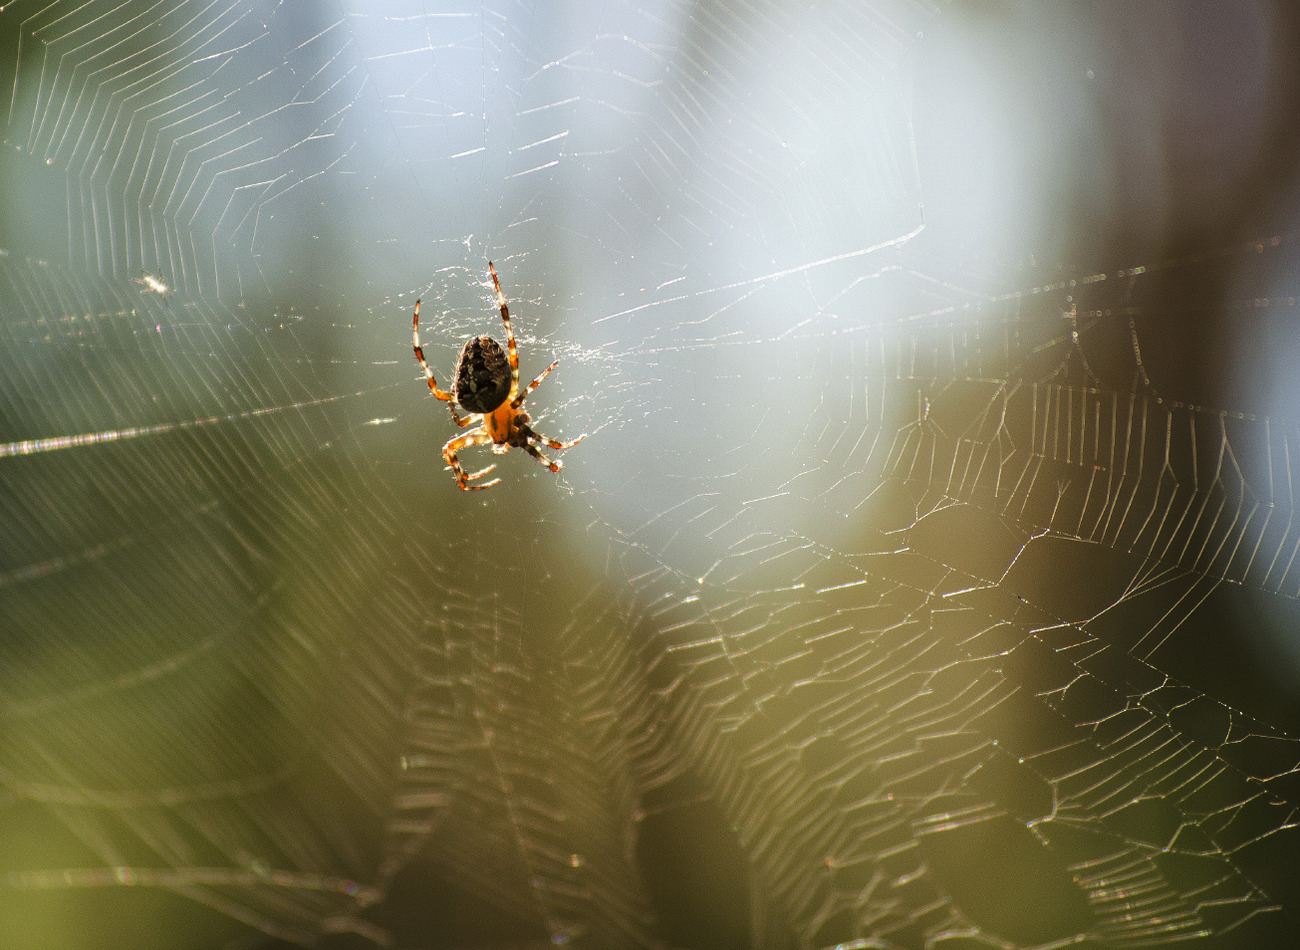 Zdjęcie: pająk w sieci